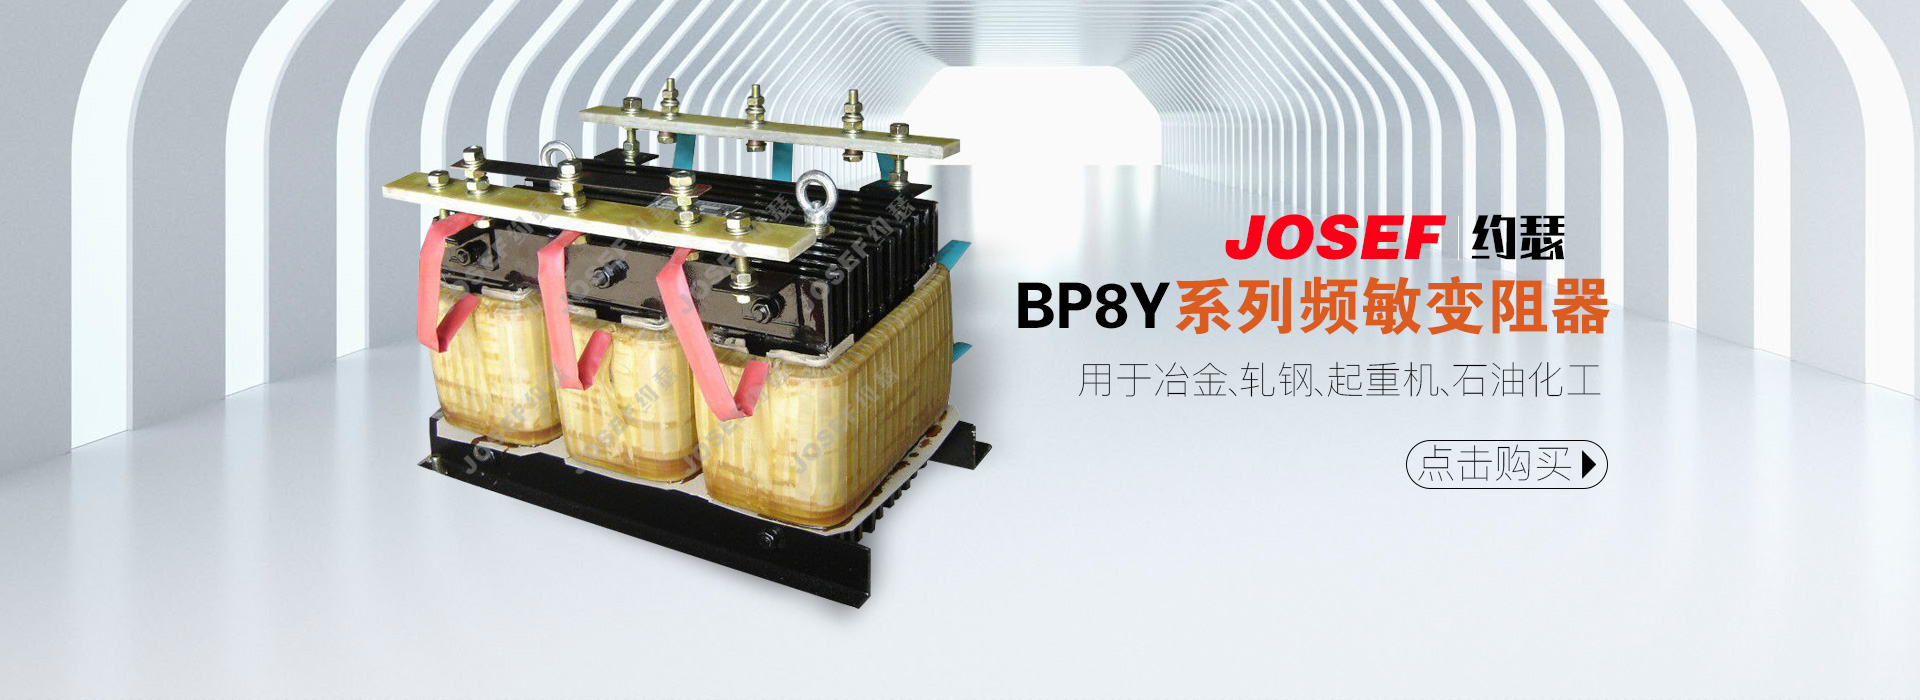 BP8Y系列频敏变阻器产品展示